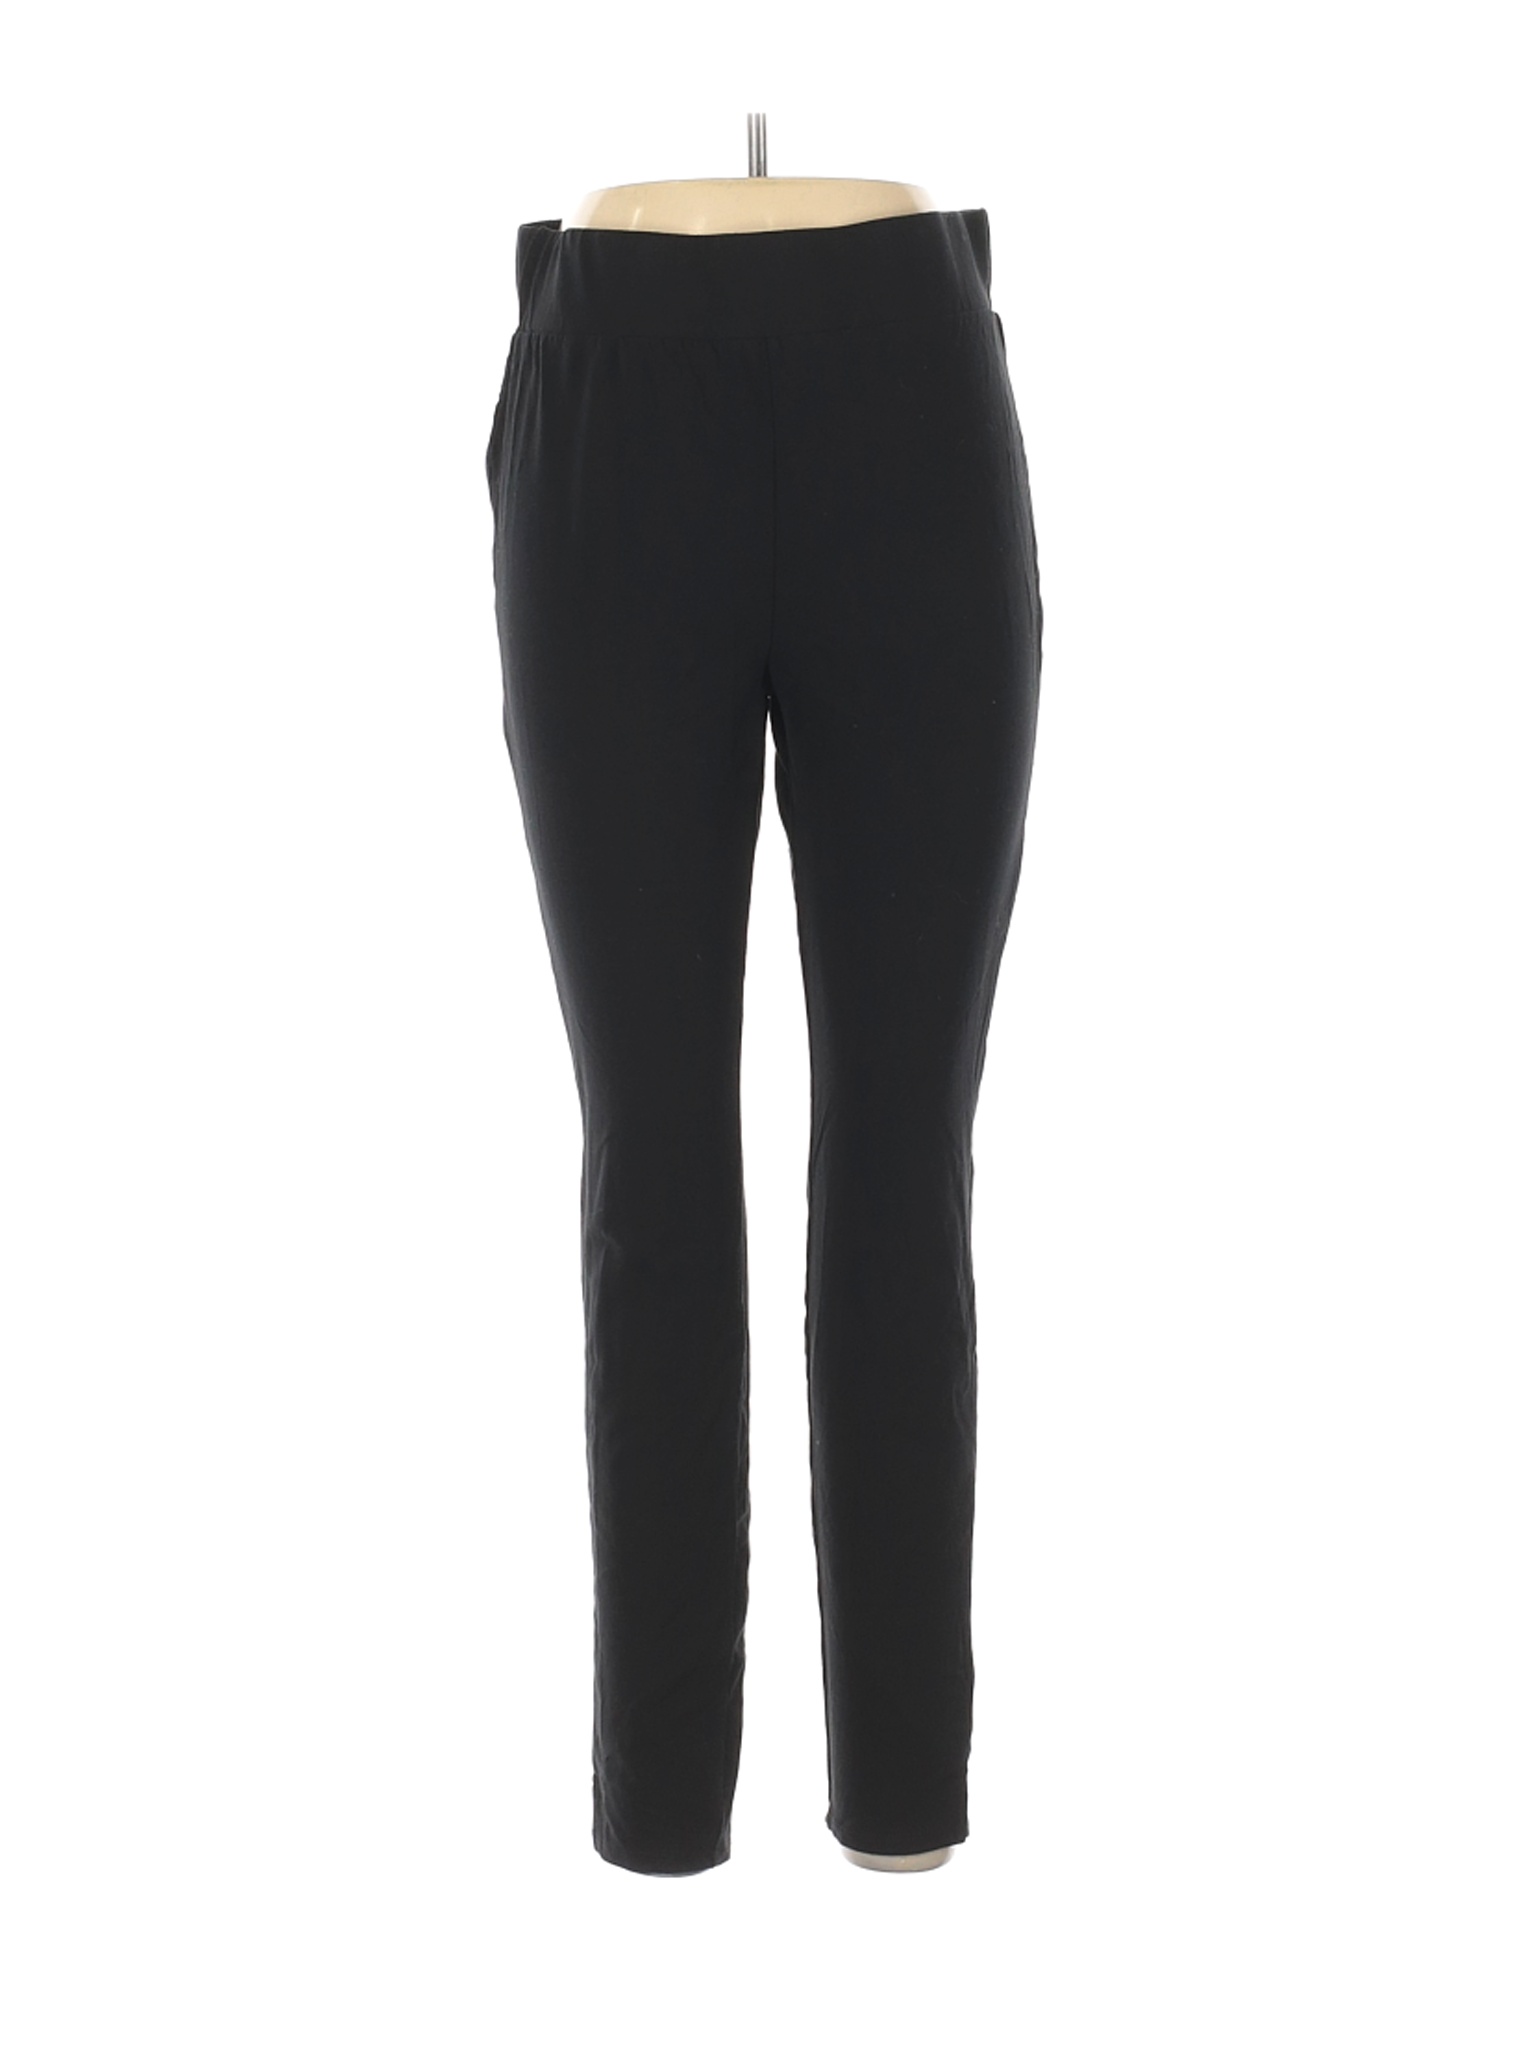 Avon Women Black Casual Pants L | eBay